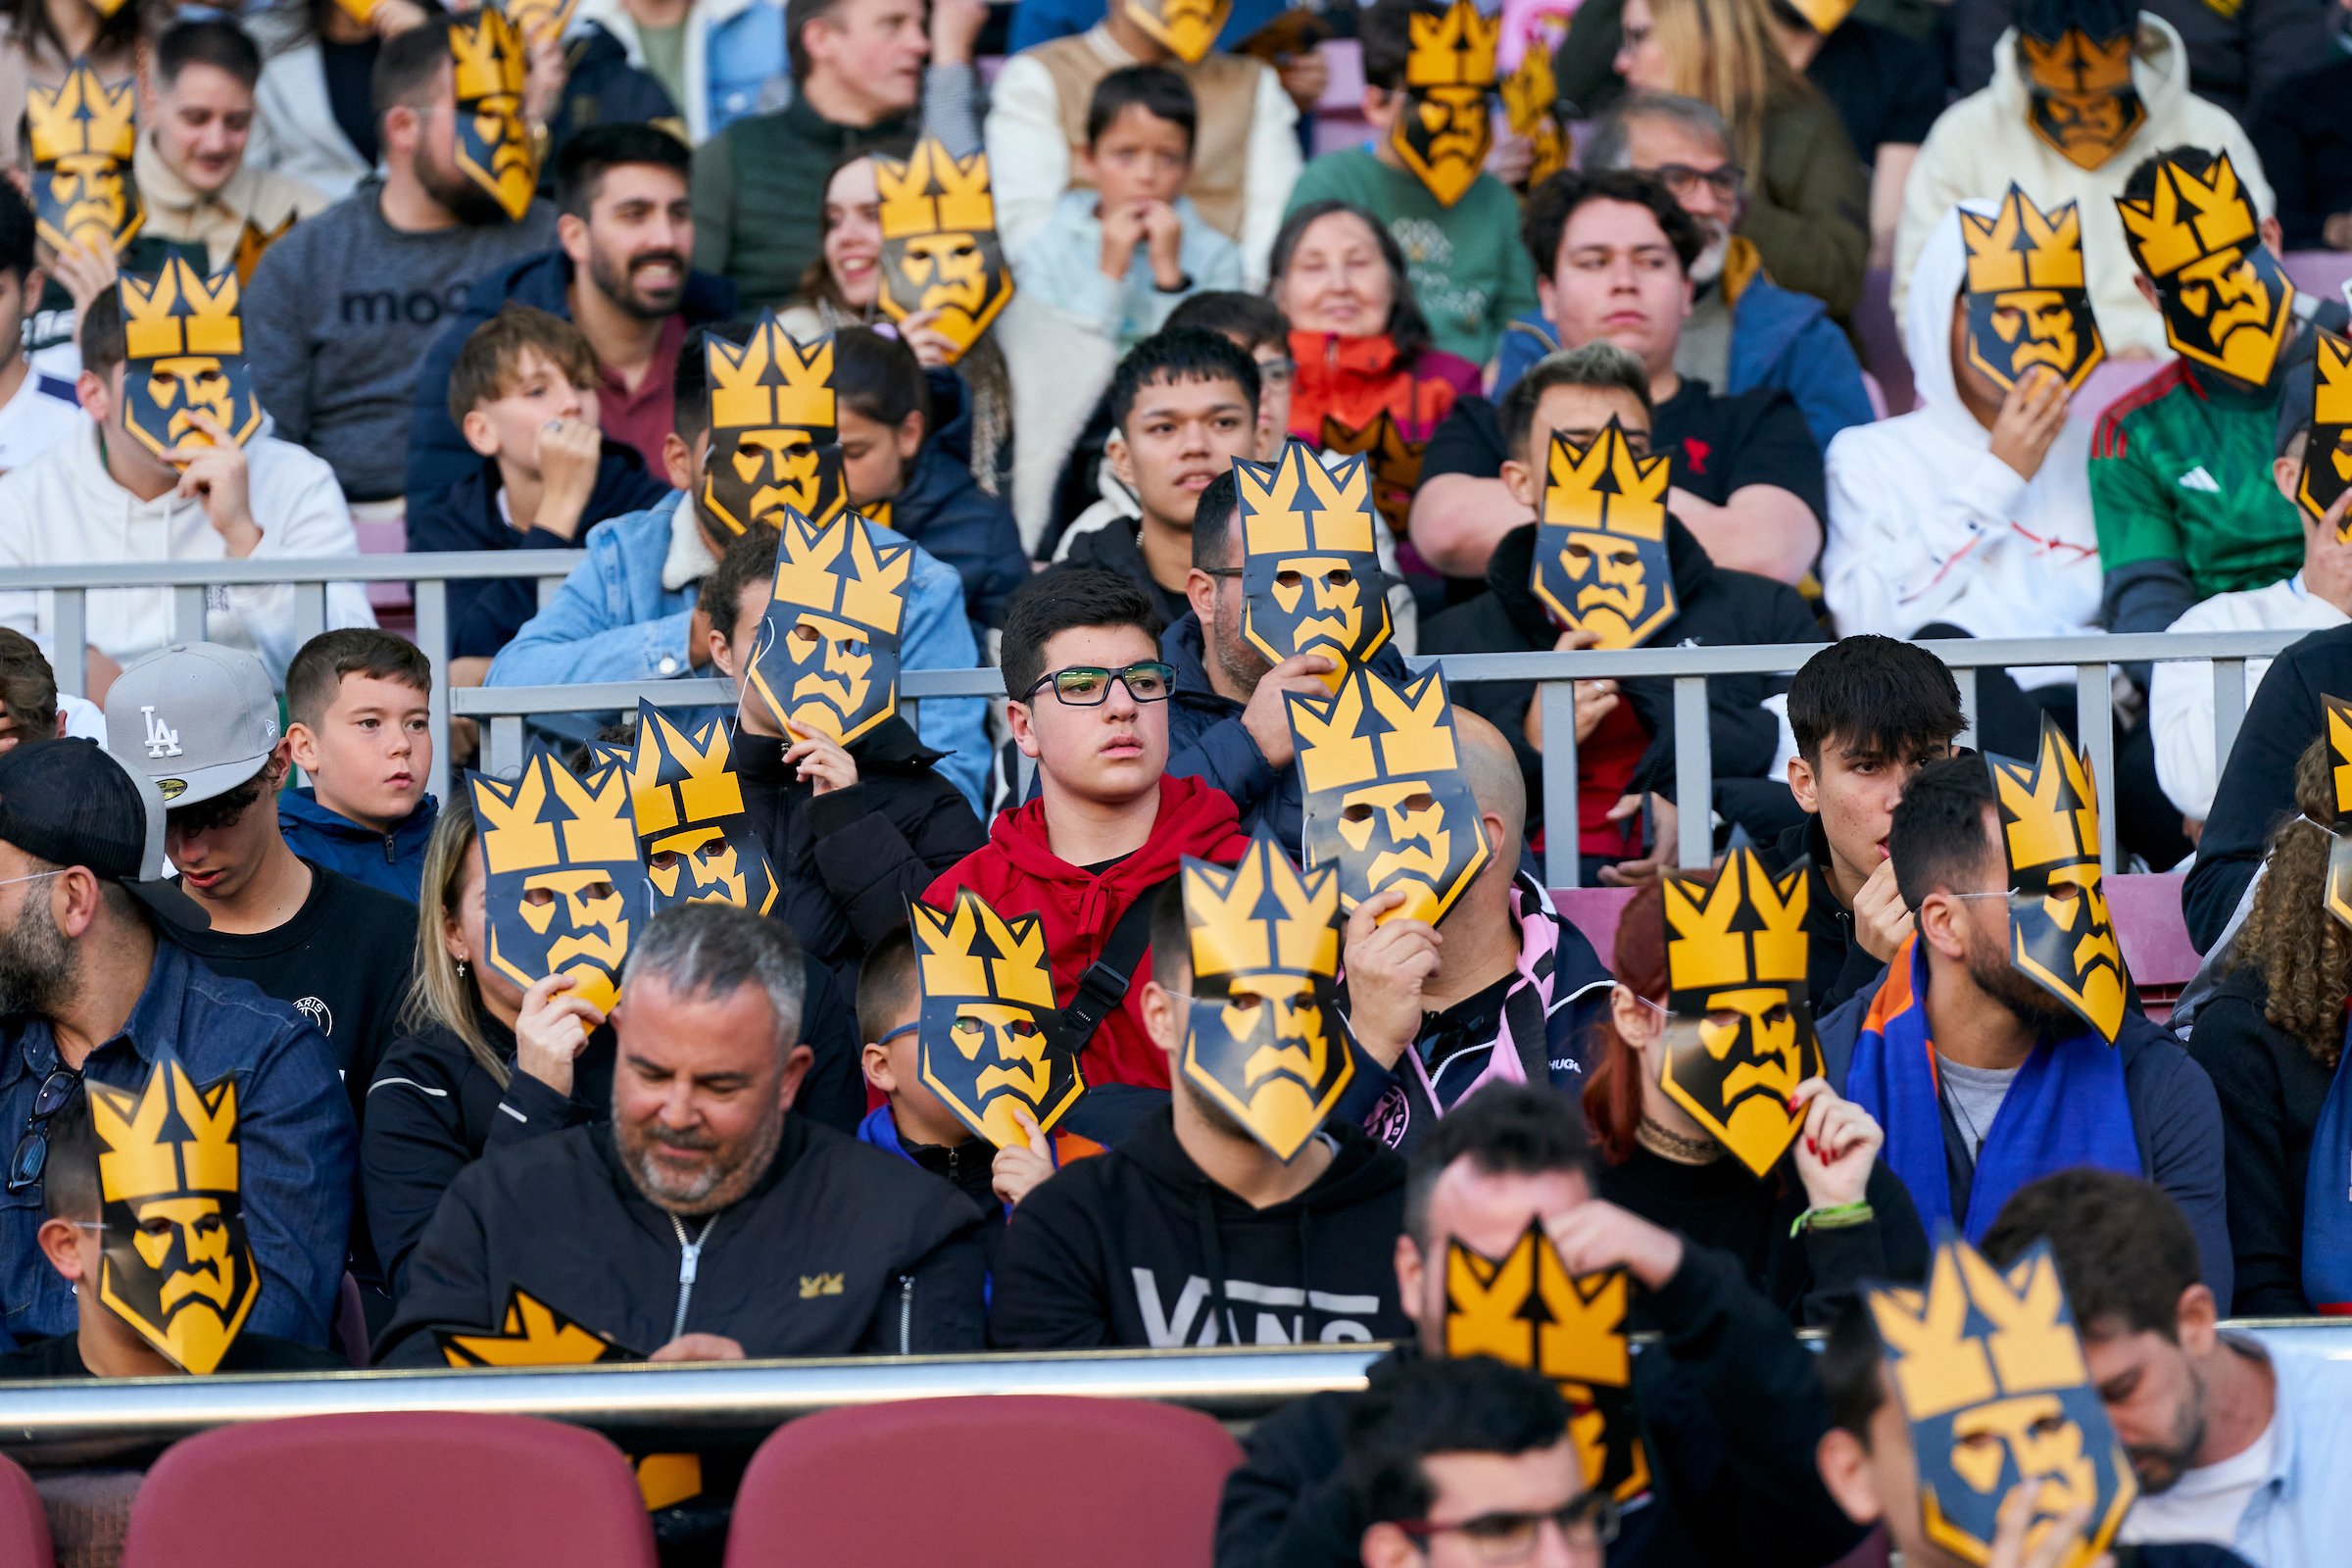 La Kings League bat el rècord Guinness de persones amb més màscares en un estadi